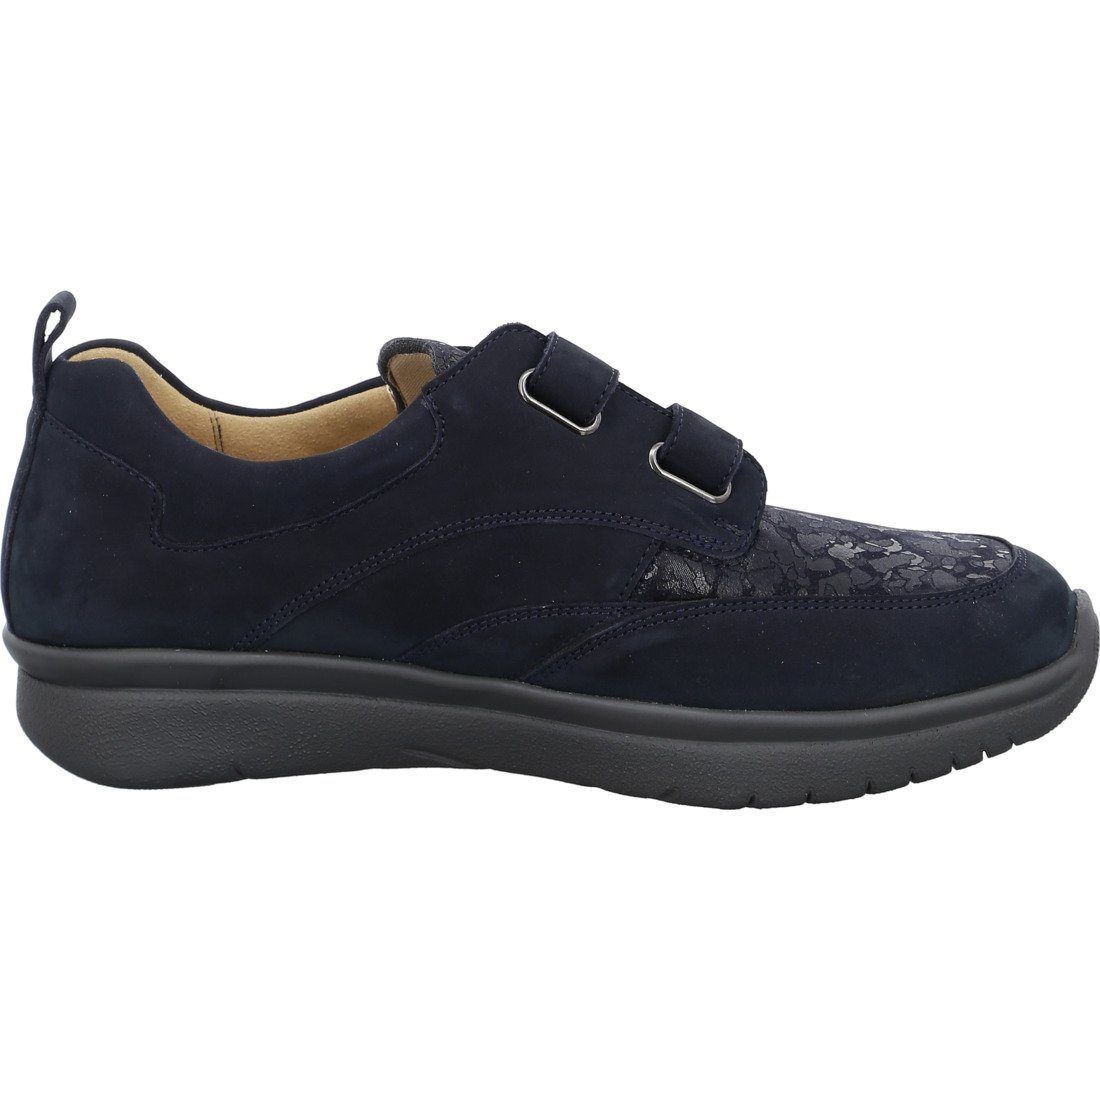 Ganter Ganter Schuhe, 050509 blau Leder Slipper Damen - Kira Slipper